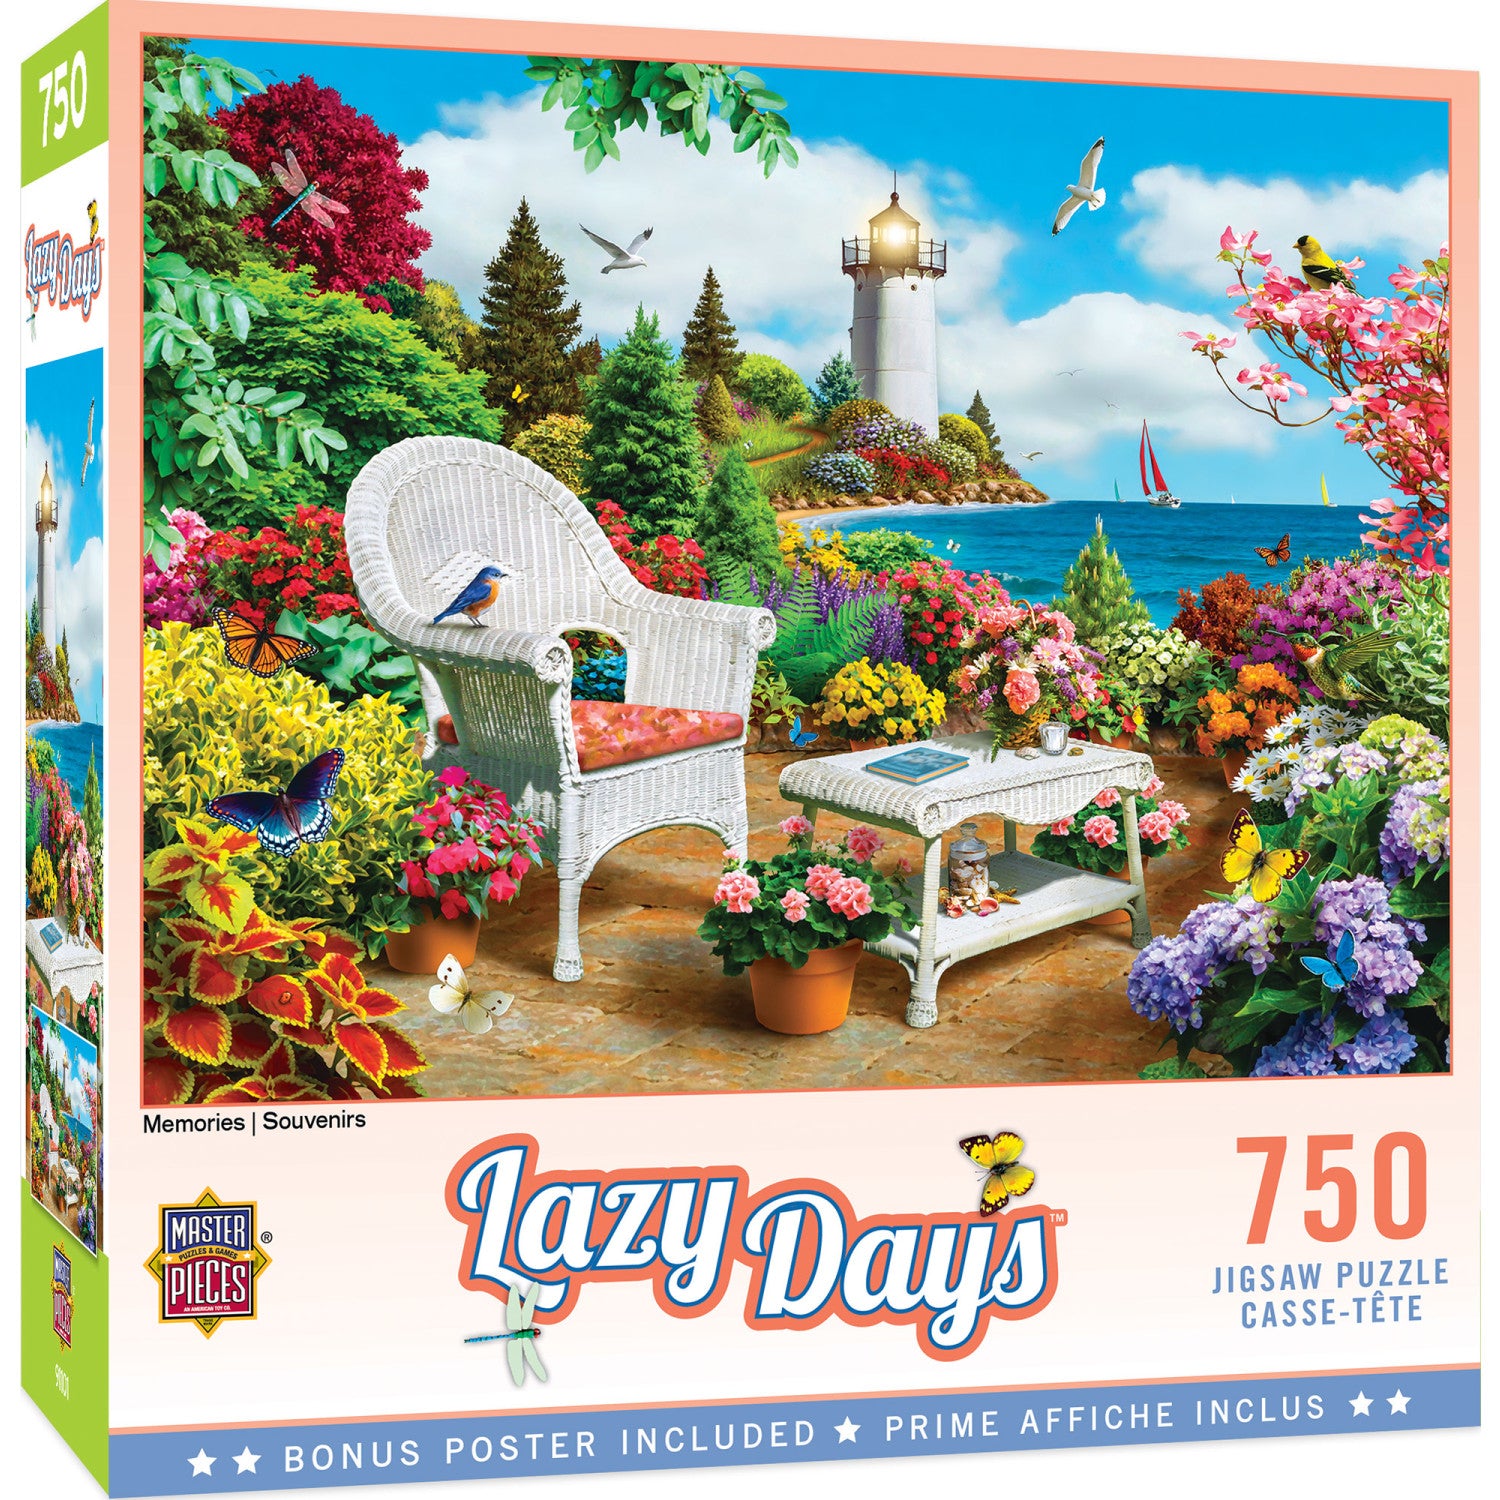 Lazy Days - Memories 750 Piece Jigsaw Puzzle